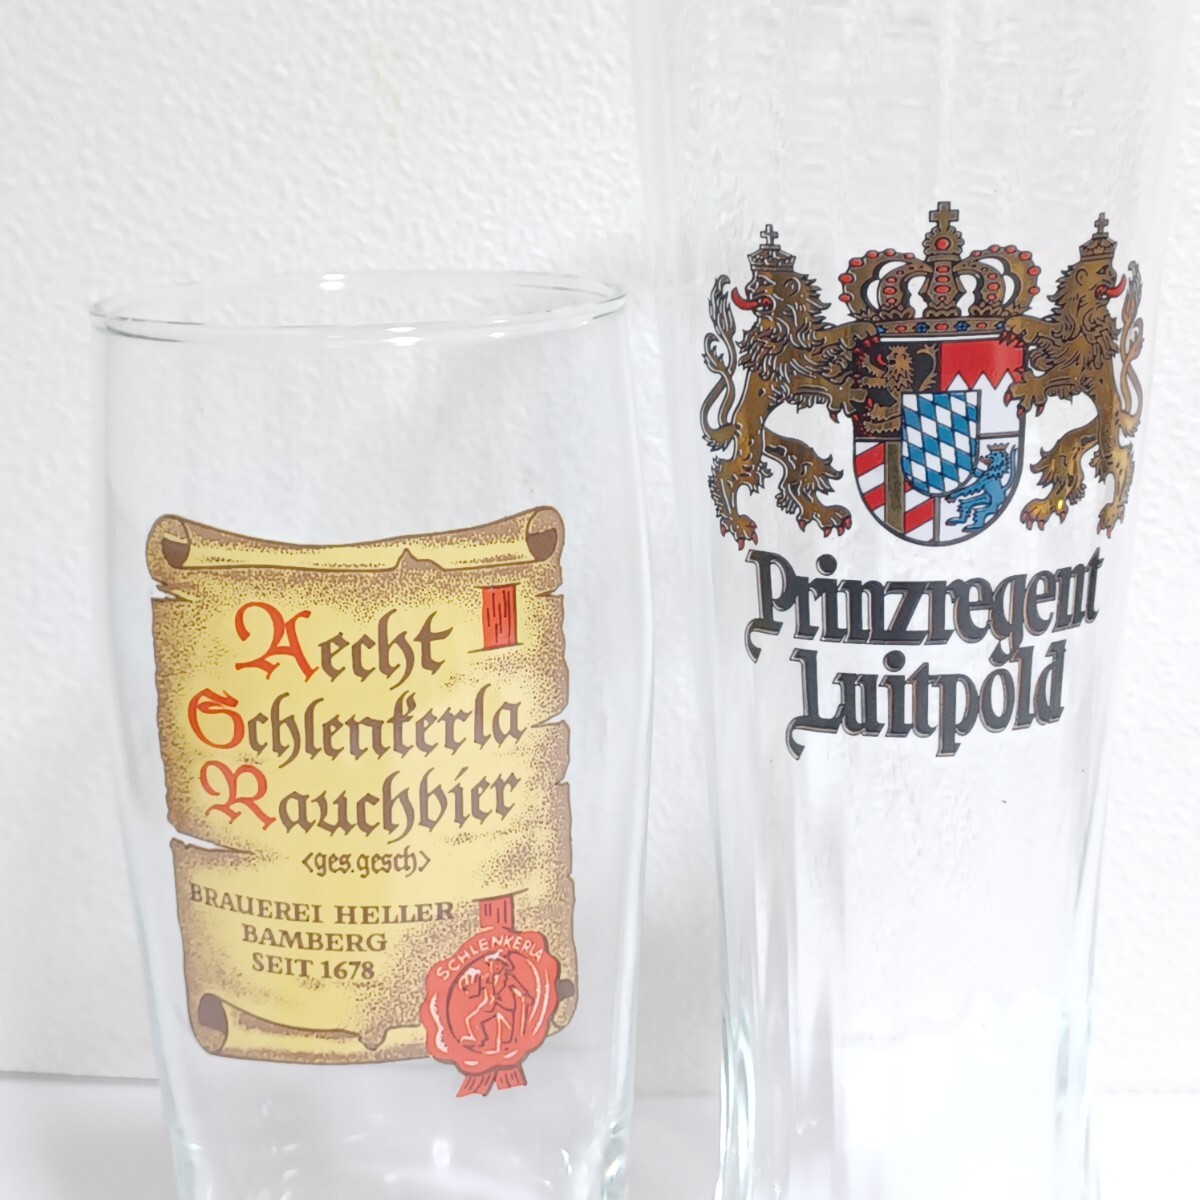 【ビアグラス2点セット】PRINZREGENT LUITPOLD ドイツビール グラス ビールグラス ジョッキ シュレンケルラ ラオホ メルツェン (SK)の画像6